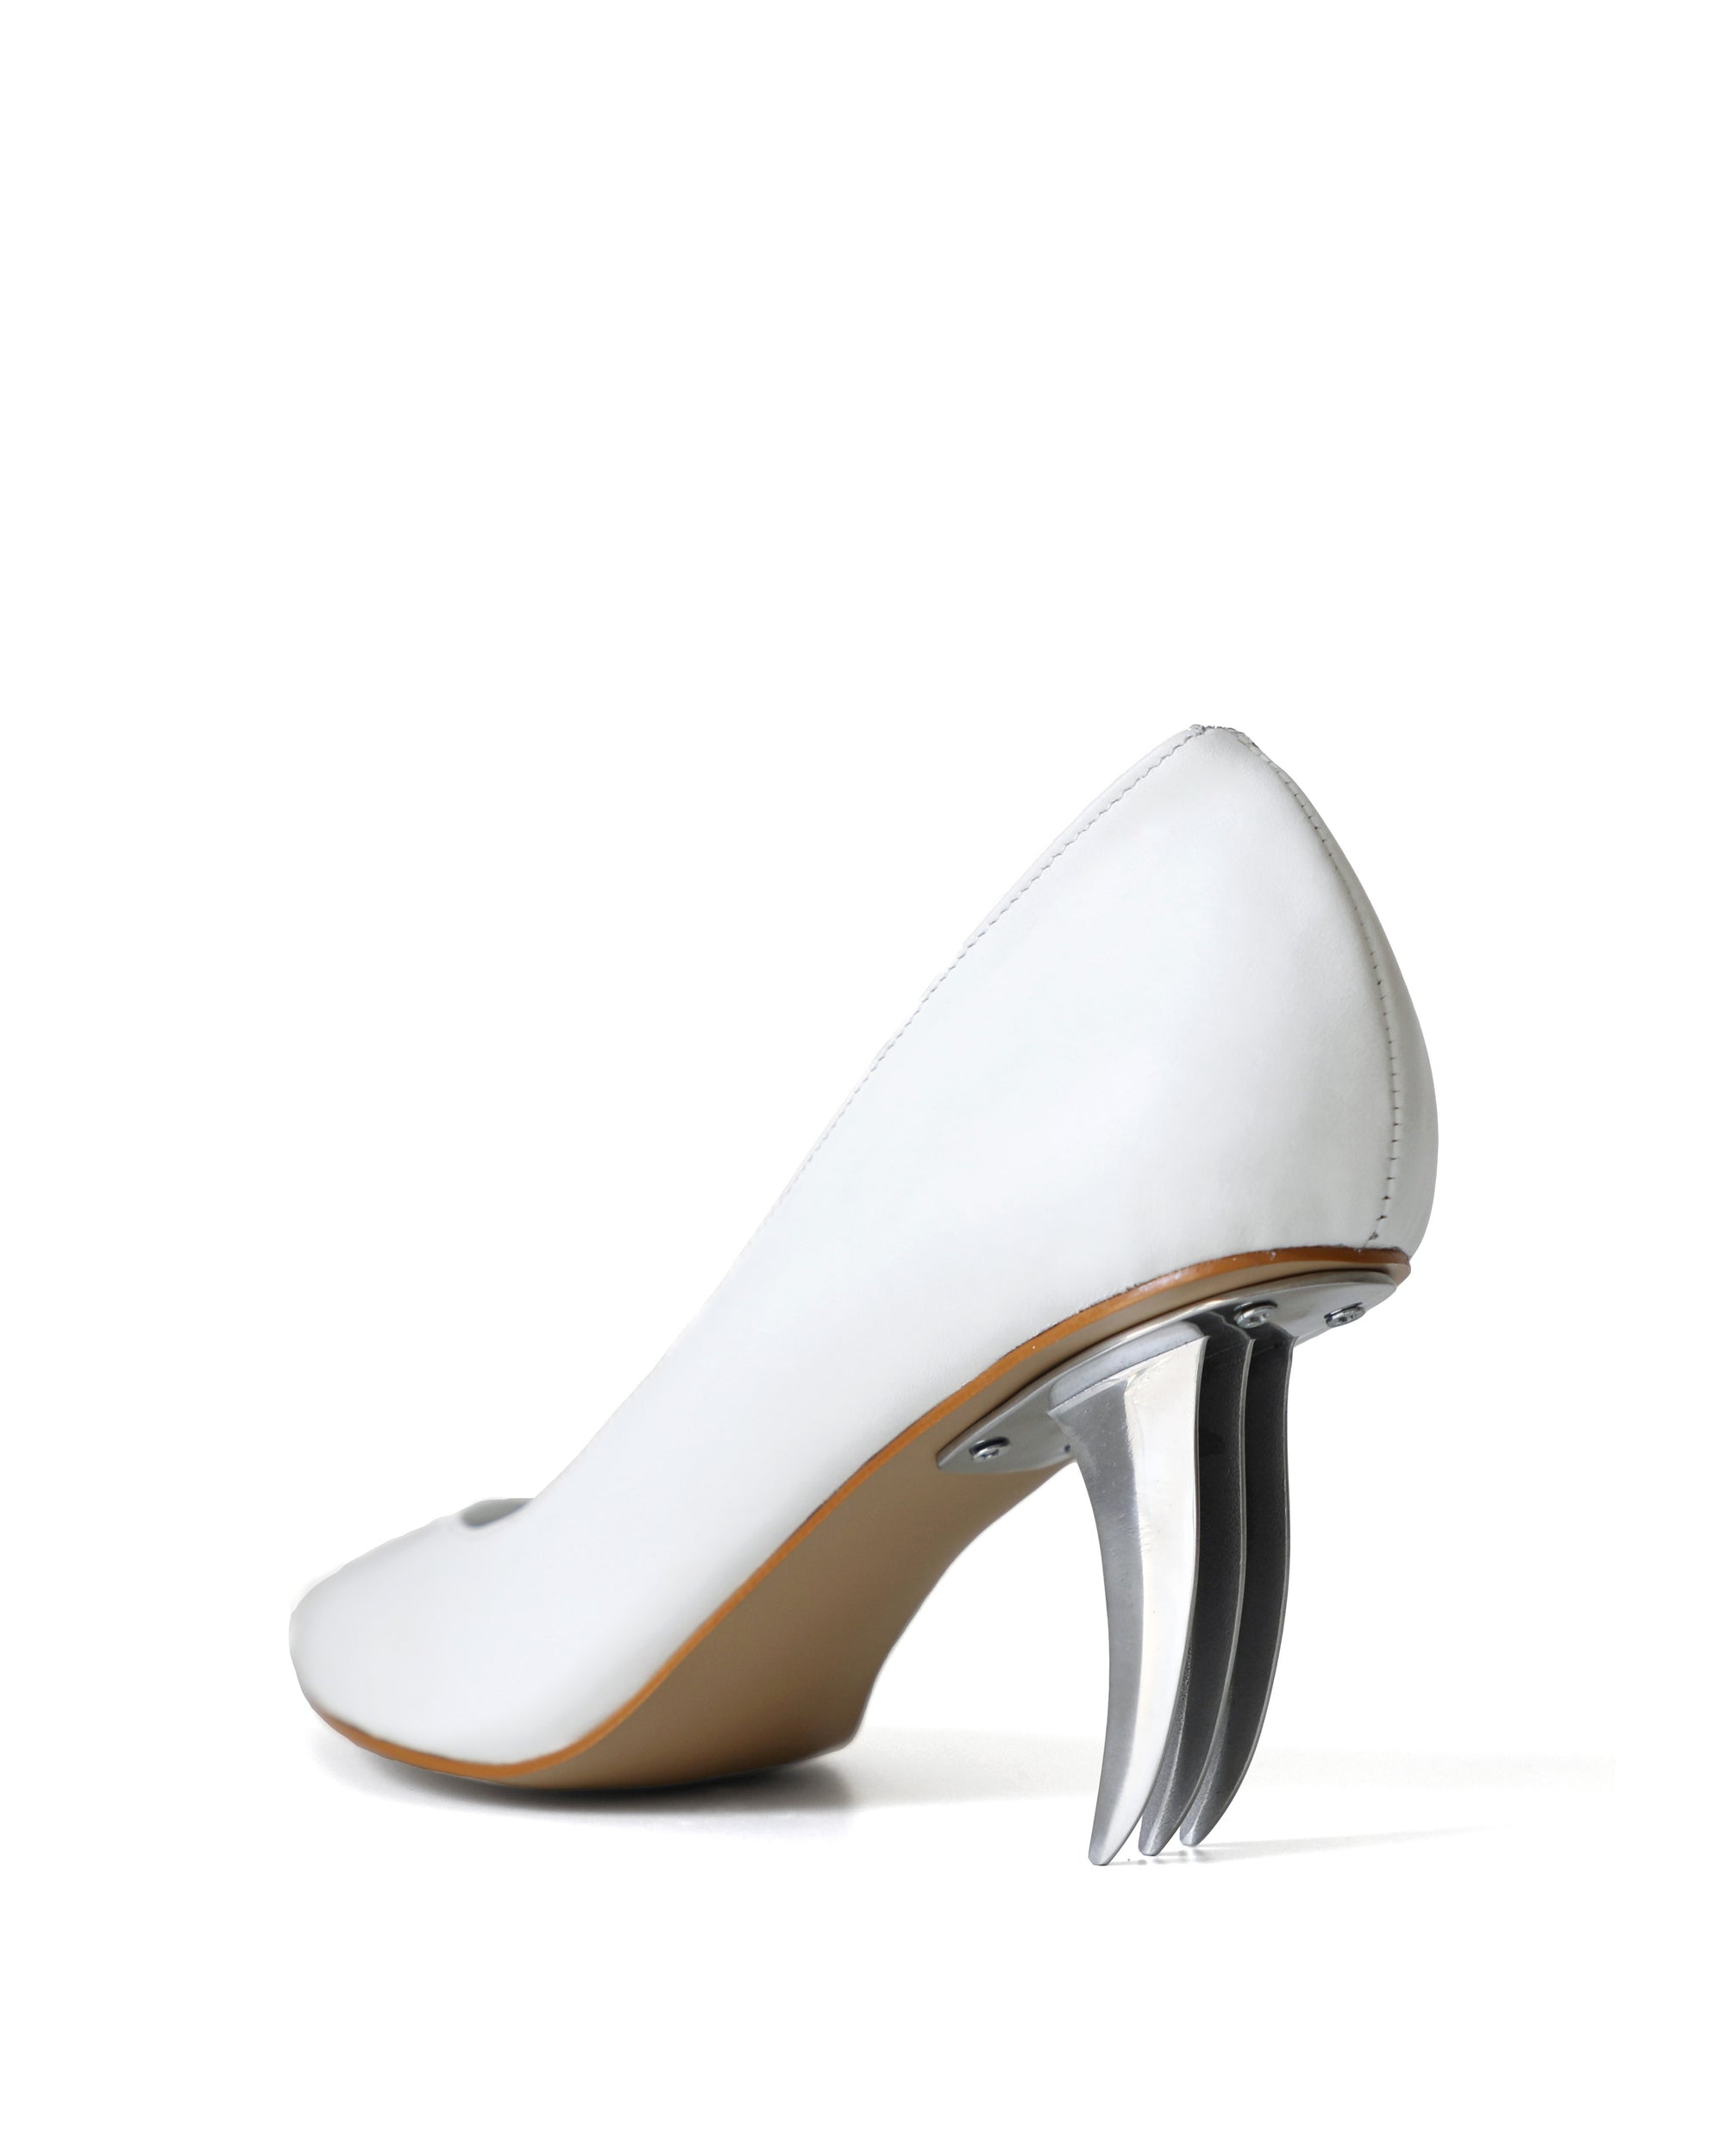 White Blade Heels - RIVERPEACE.CO Women's High Heels - Side